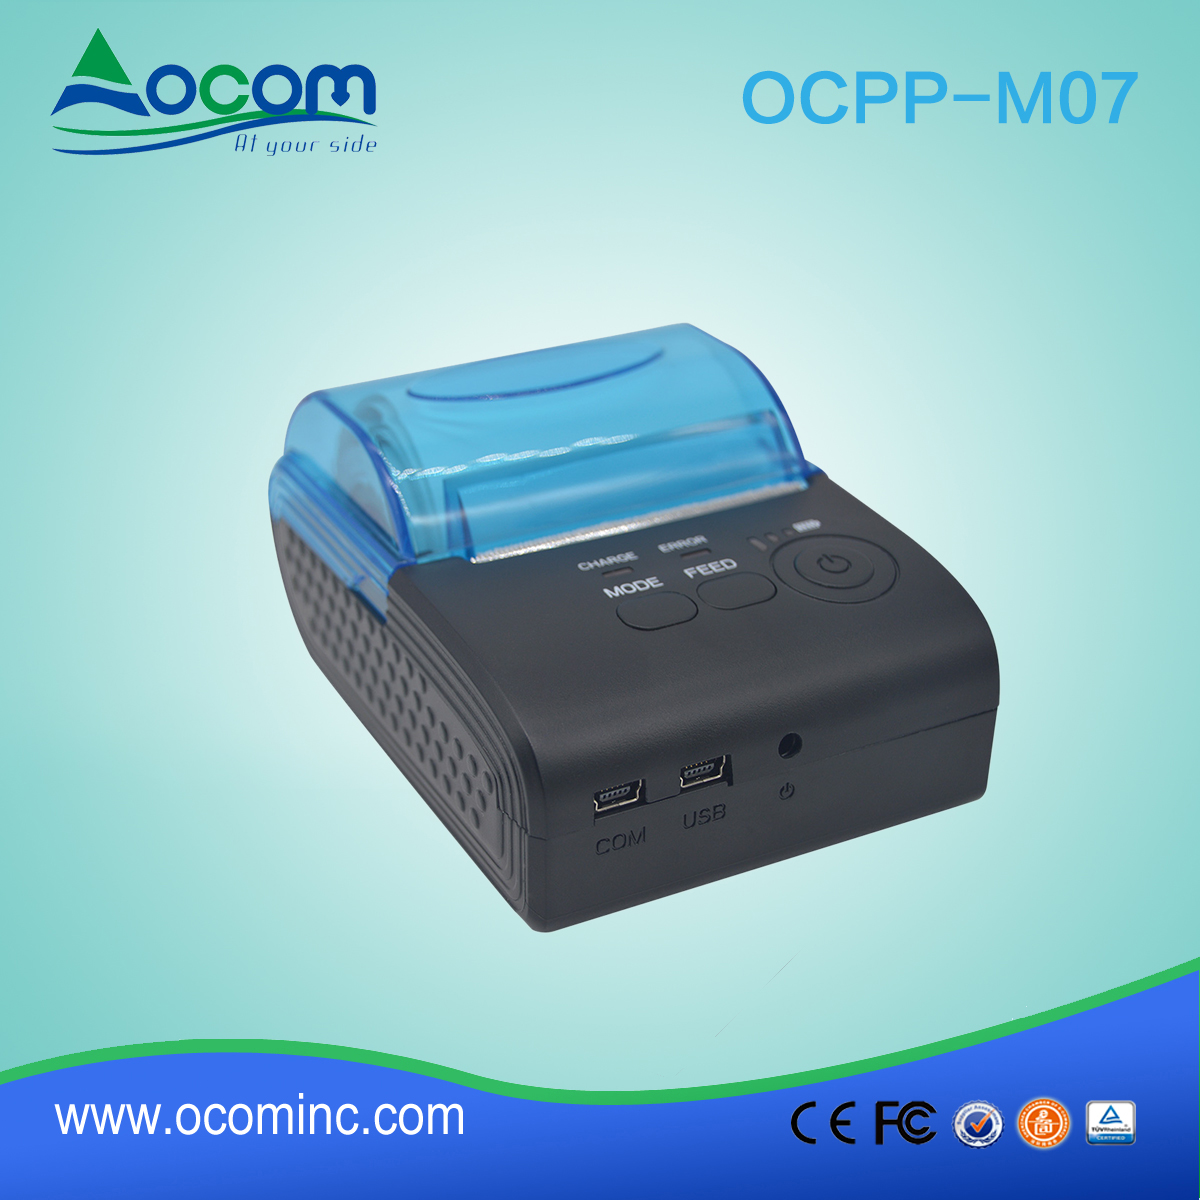 OCPP-M07 2017 drukarki przenośne bezprzewodowe bluetooth dla systemu taxi